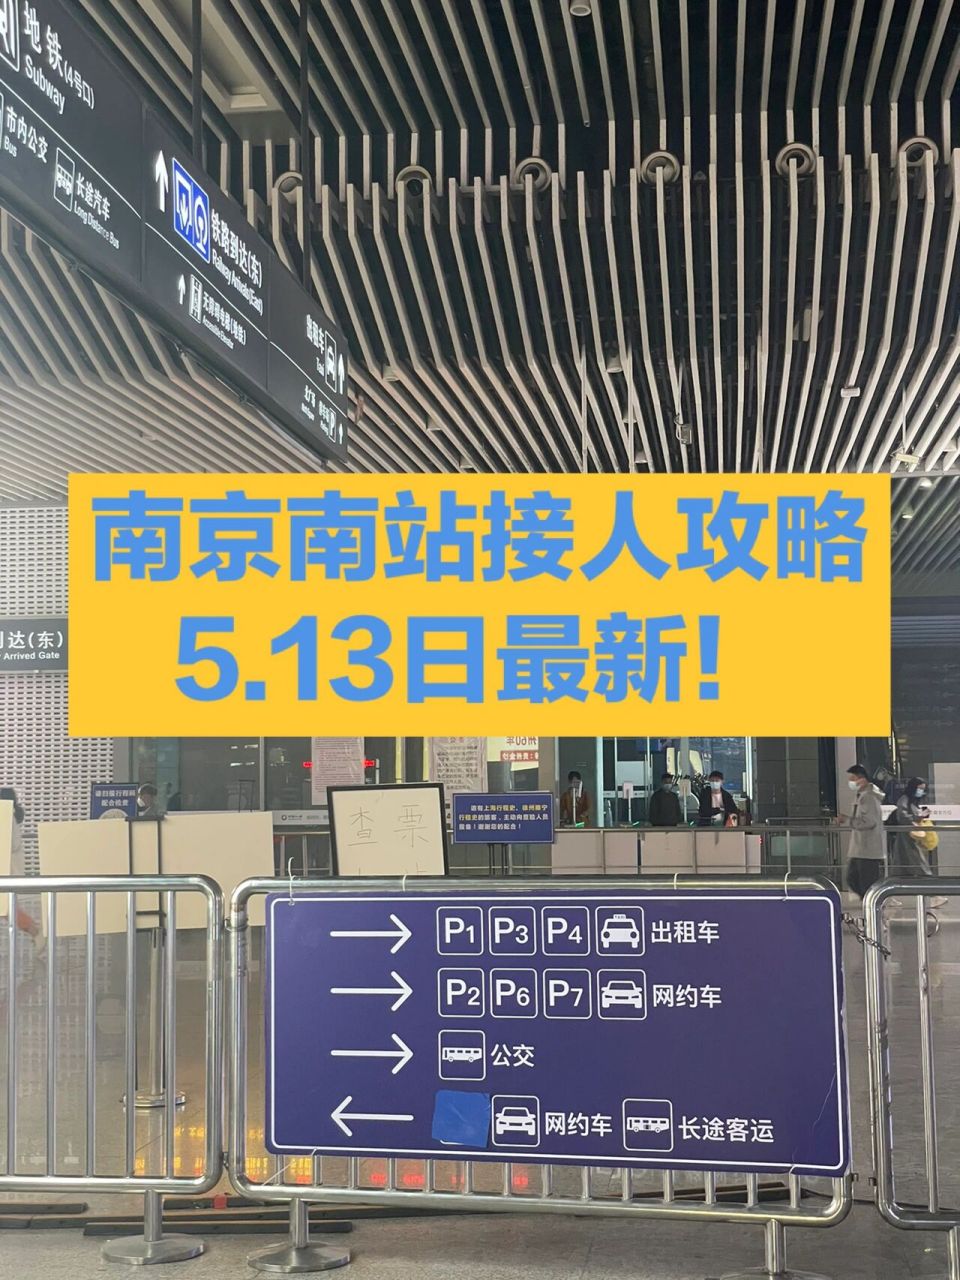 南京南站出站口图片